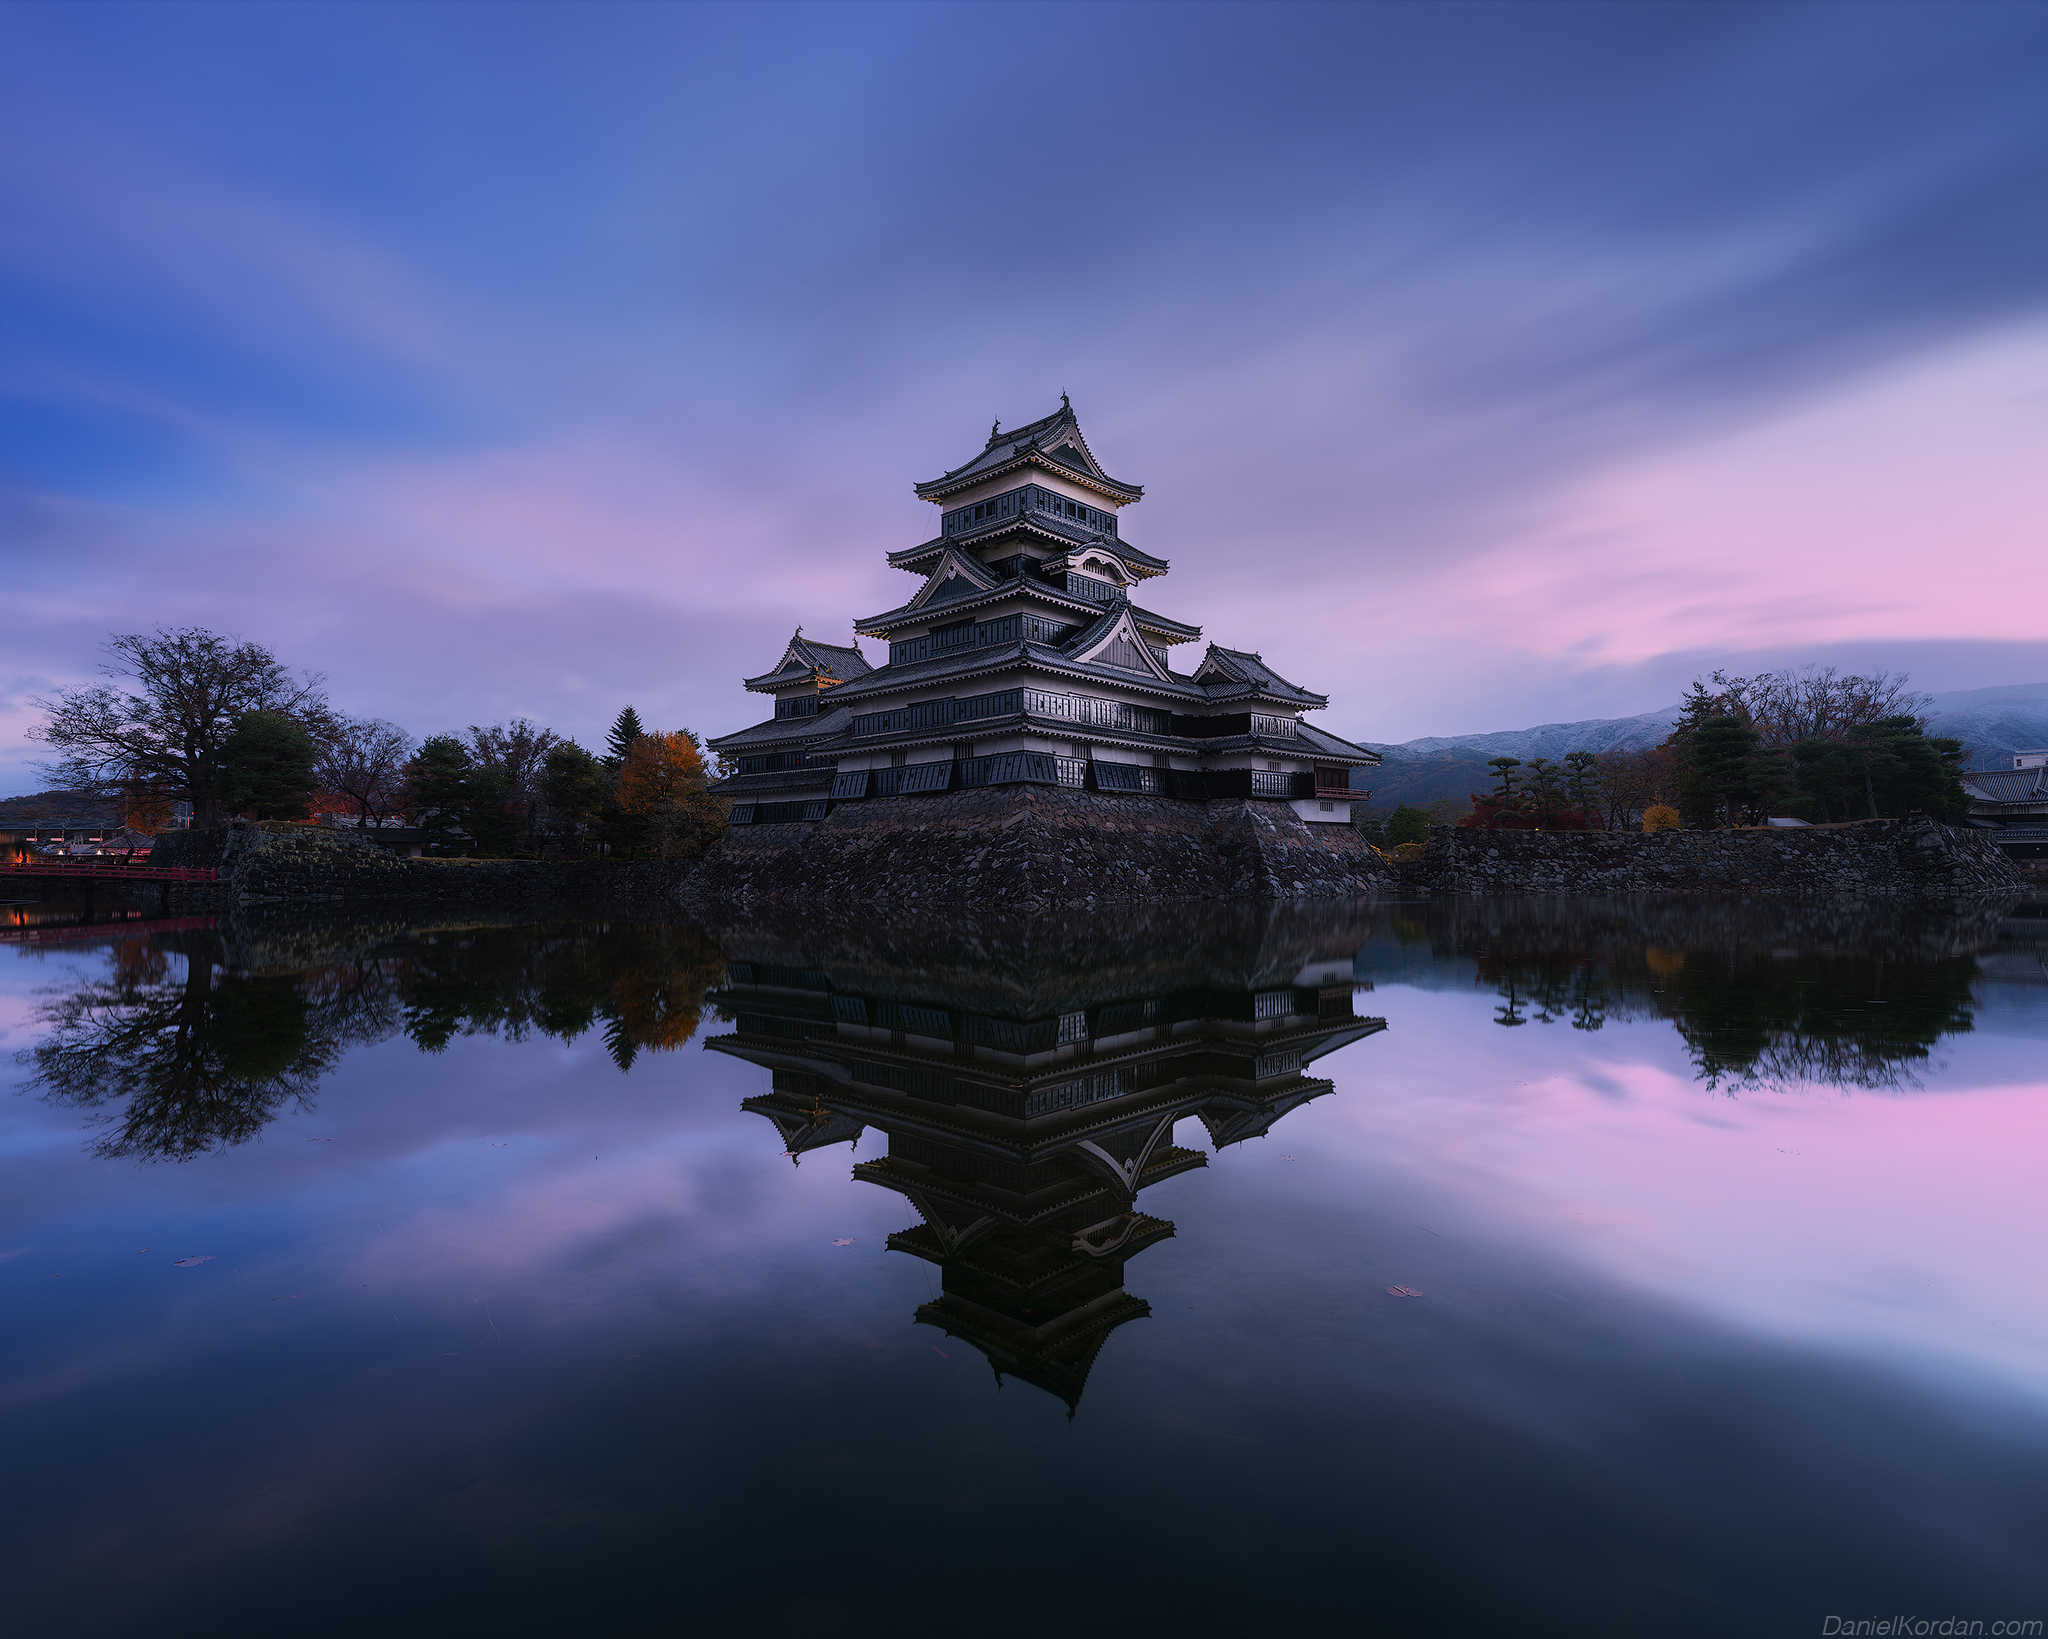 General 2048x1639 Daniel Kordan castle reflection symmetry water Matsumoto Castle low light watermarked Japan